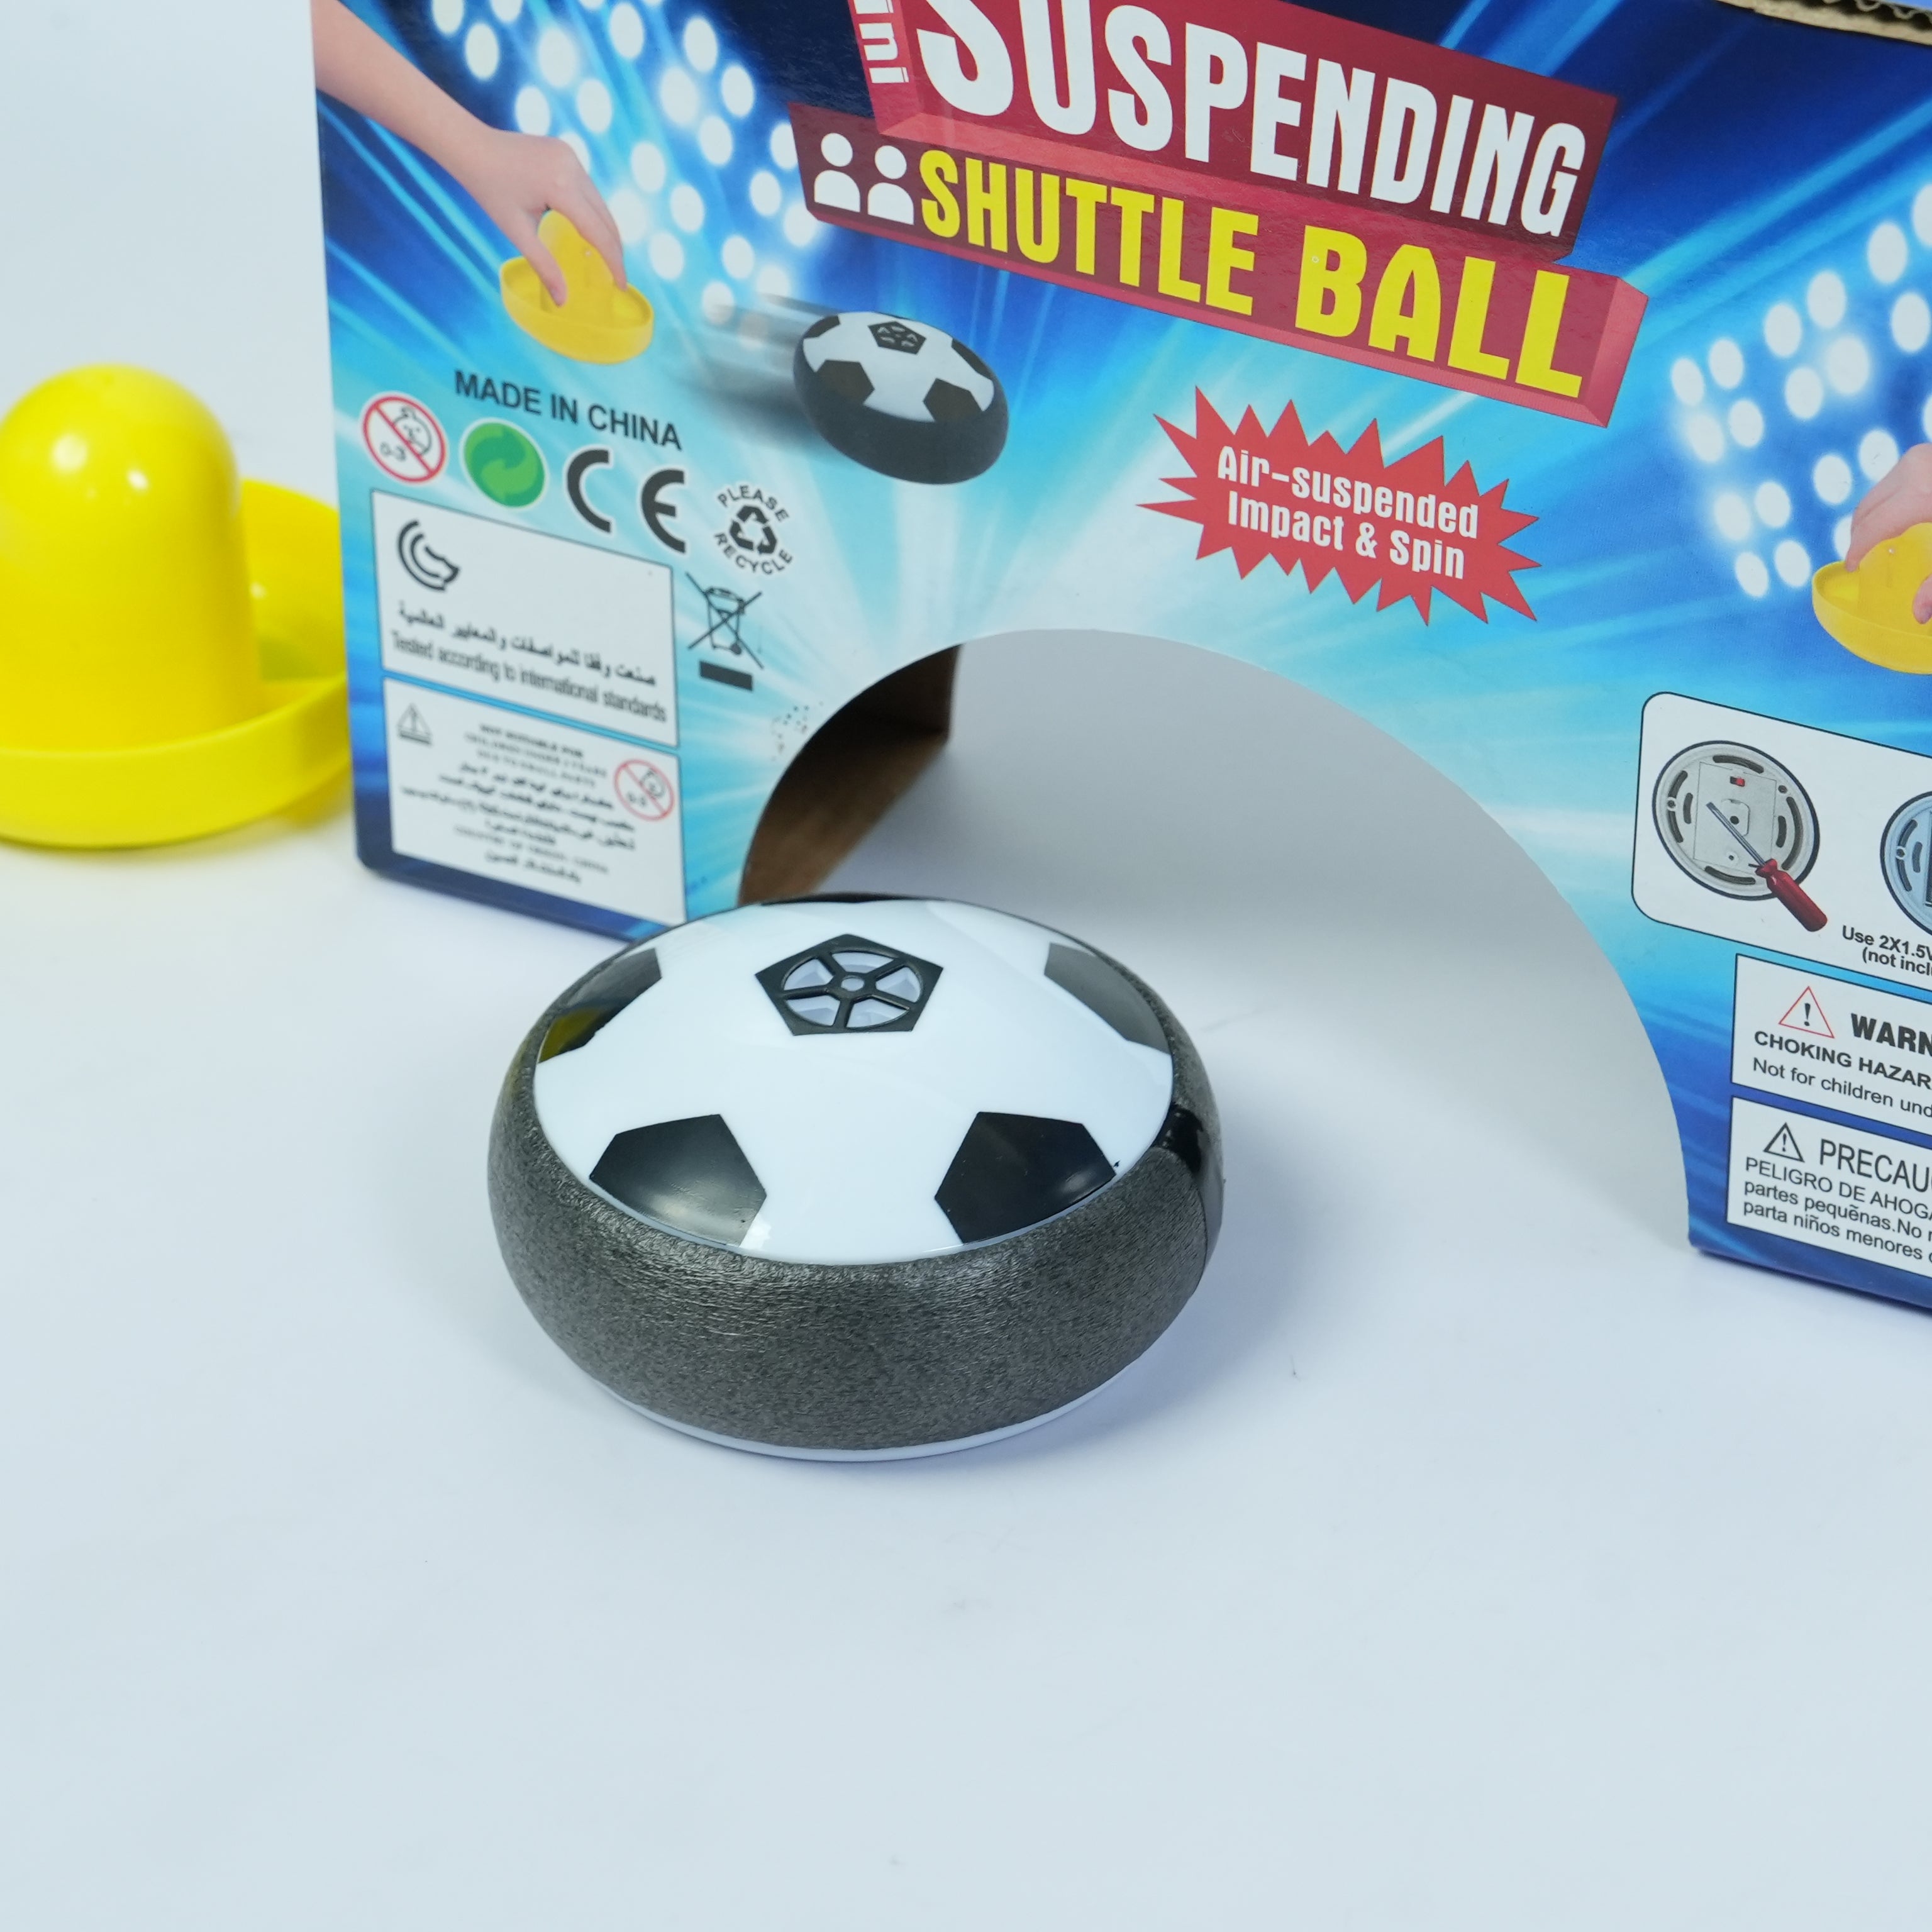 31-Suspended Shuttle Soccer Ball